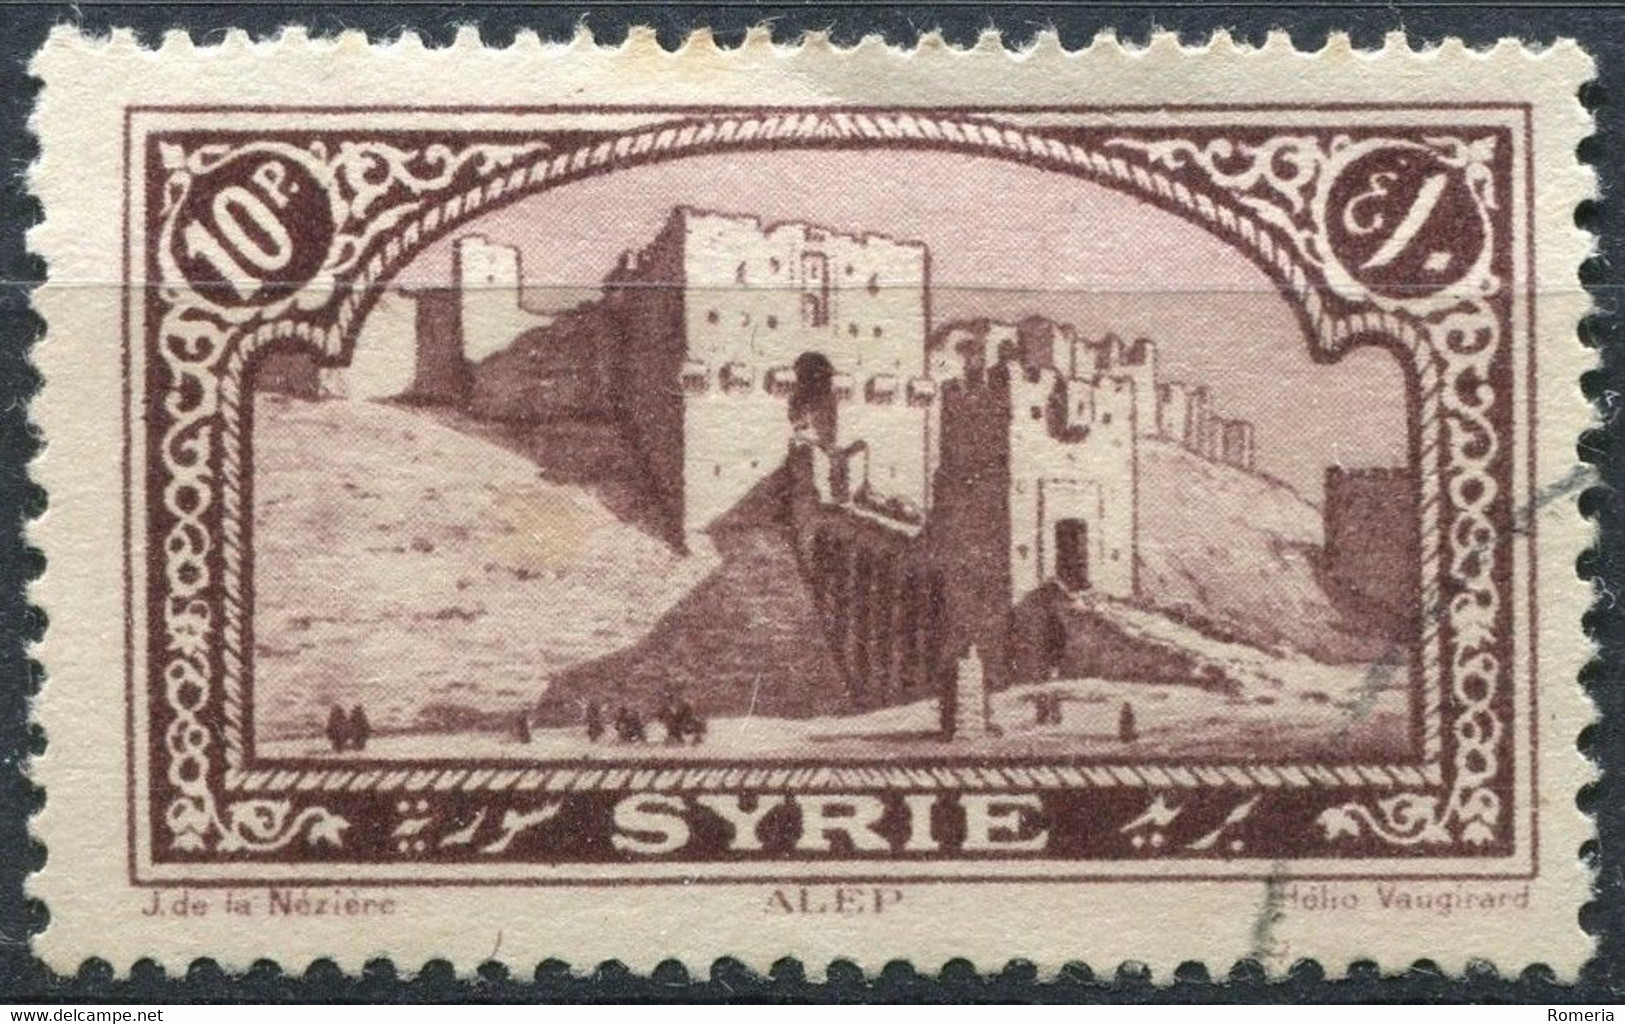 Syrie - 1920 -> 1930 - Lot timbres Syrie (Colonie Française) + 2 timbres République Syrie - obl. - nºs dans description